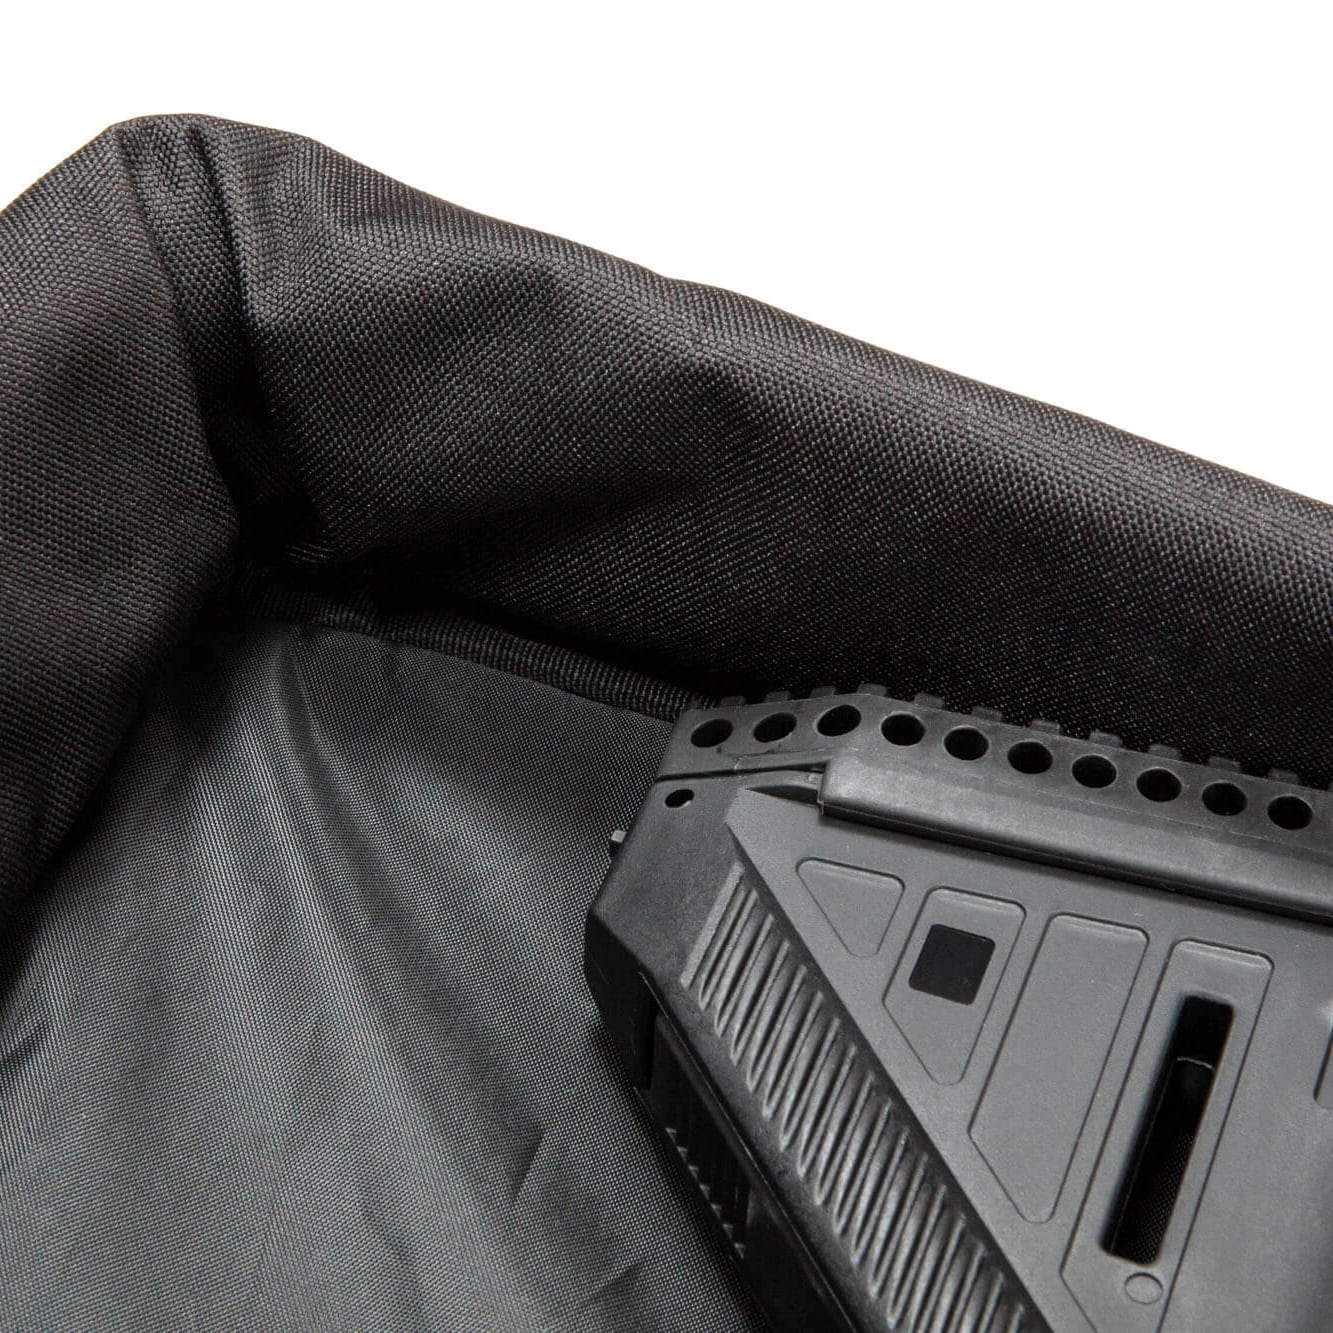 Pokrowiec na replikę Specna Arms Gun Bag V3 - Czarny